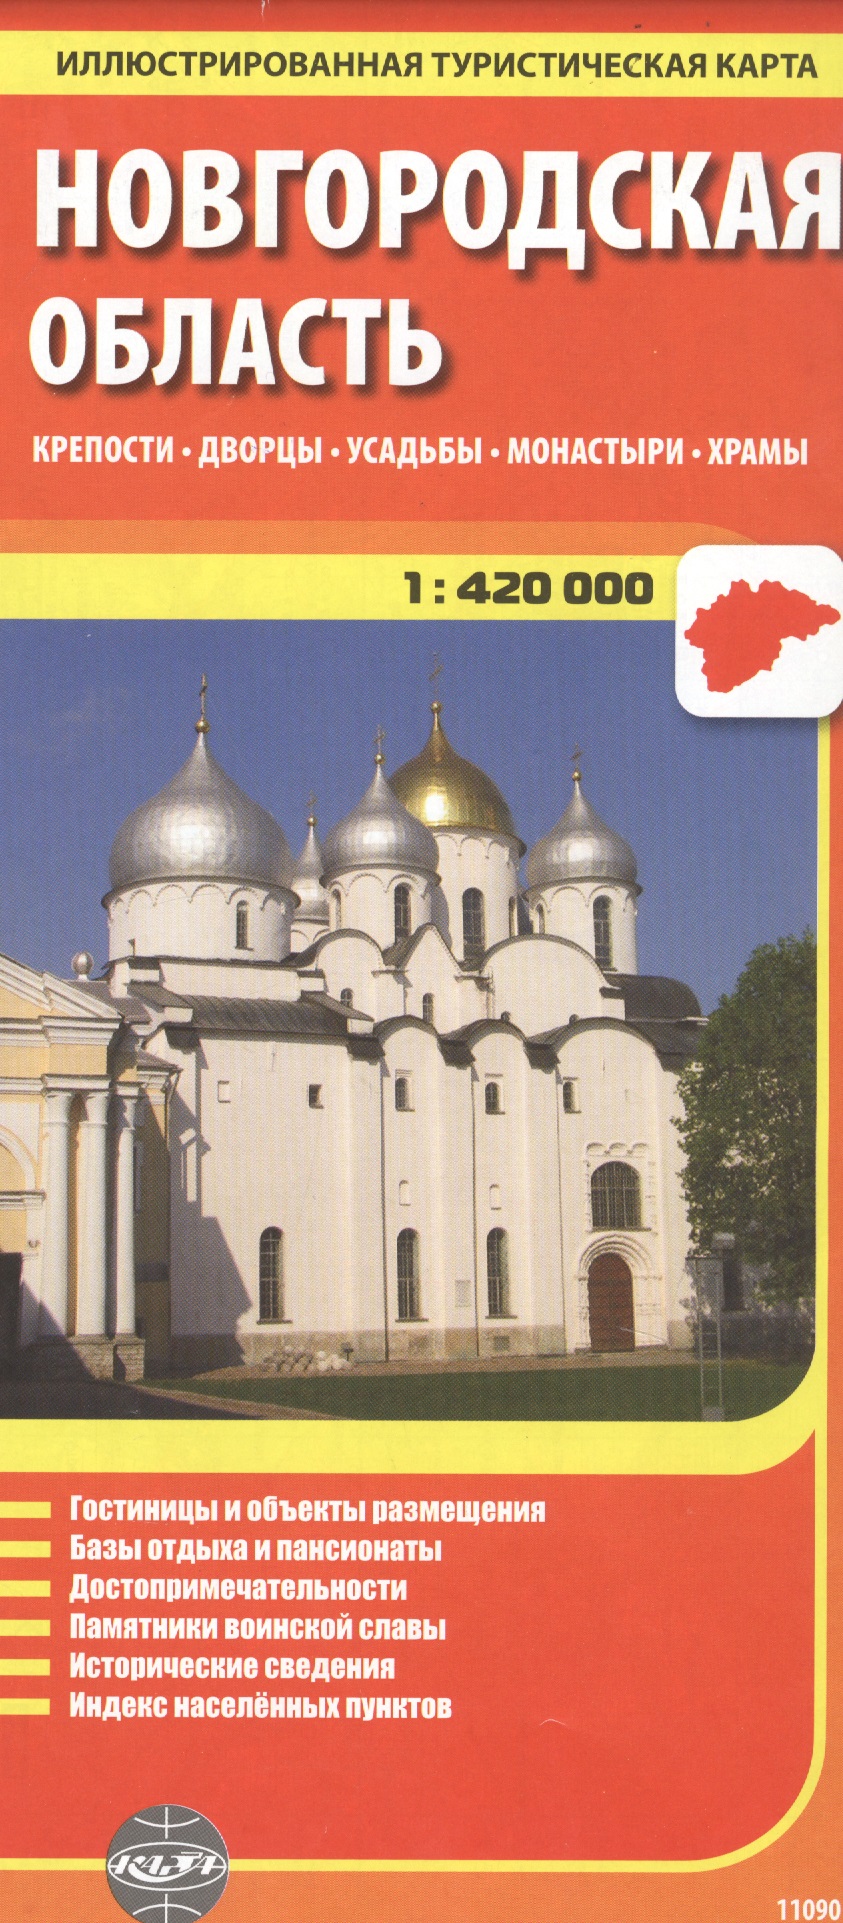 Ясинский Станислав - Новгородская область, масштаб 1:420000. Крепости, дворцы, усадьбы, монастыри, храмы